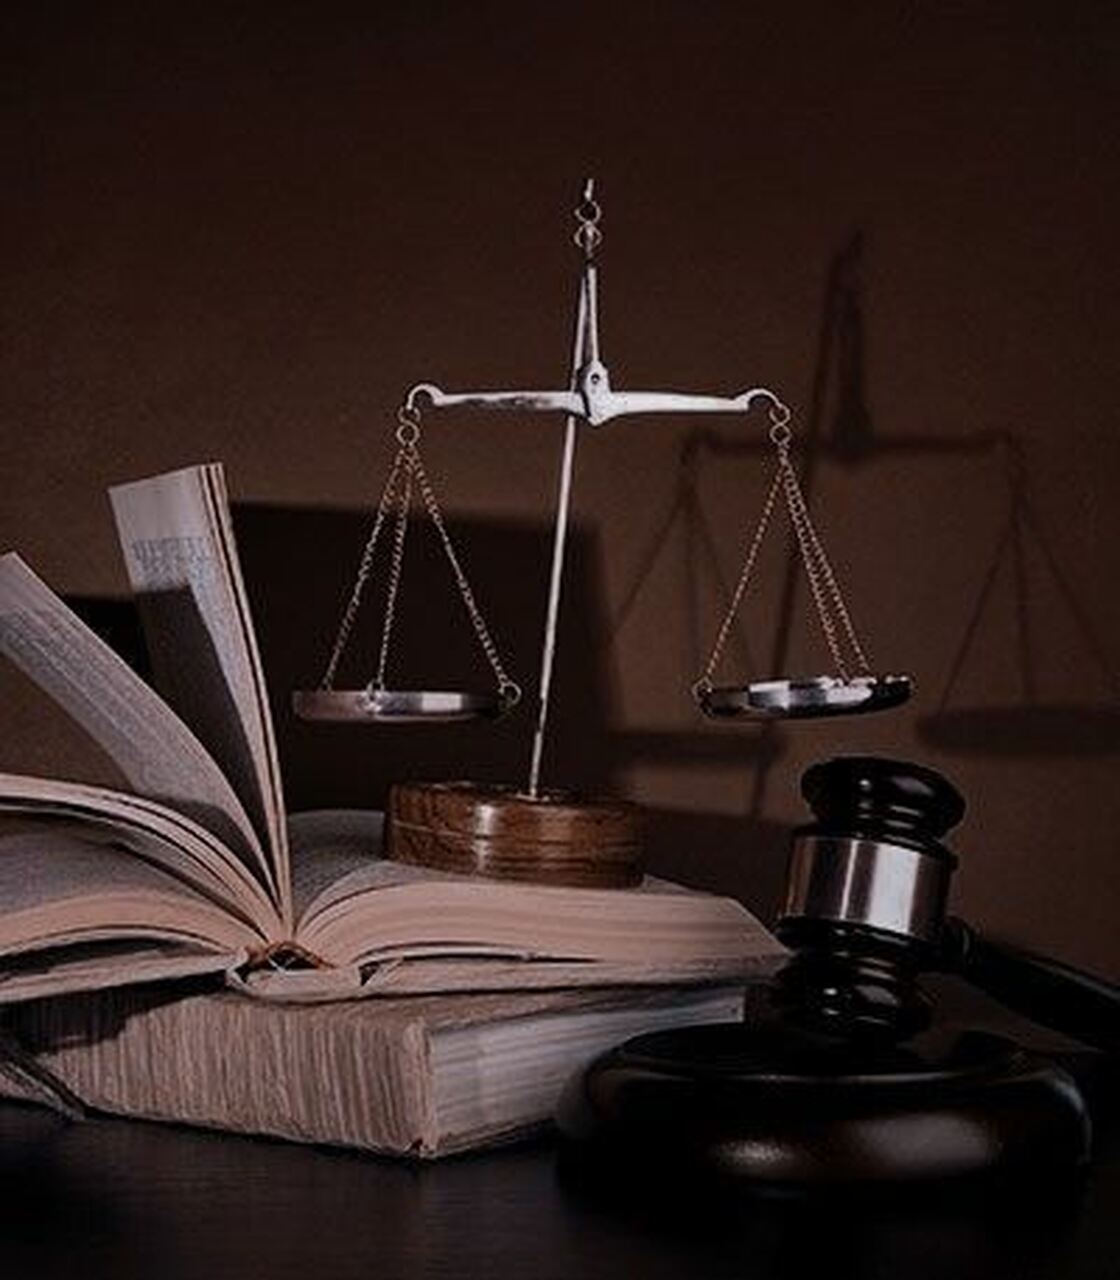 Balança da Justiça com Código penal e martelo da Justiça